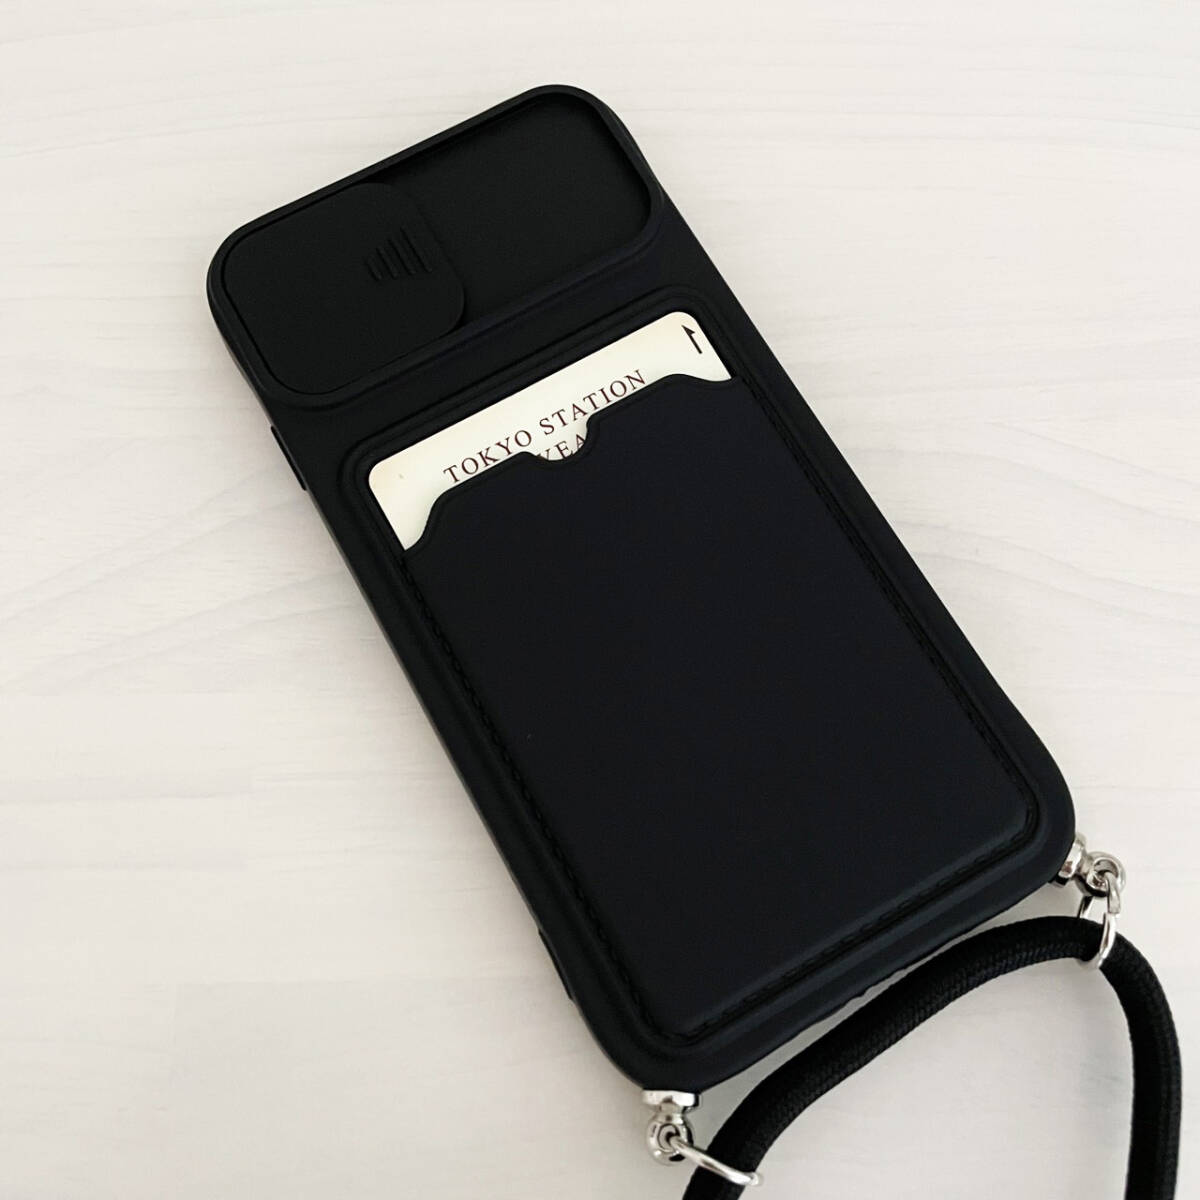 iPhone 6 6s 7 8 SE (第2世代/第3世代) SE2 SE3 ケース シリコン スマホ ショルダー 肩掛け 紐付き 収納 ブラック 黒 アイフォン